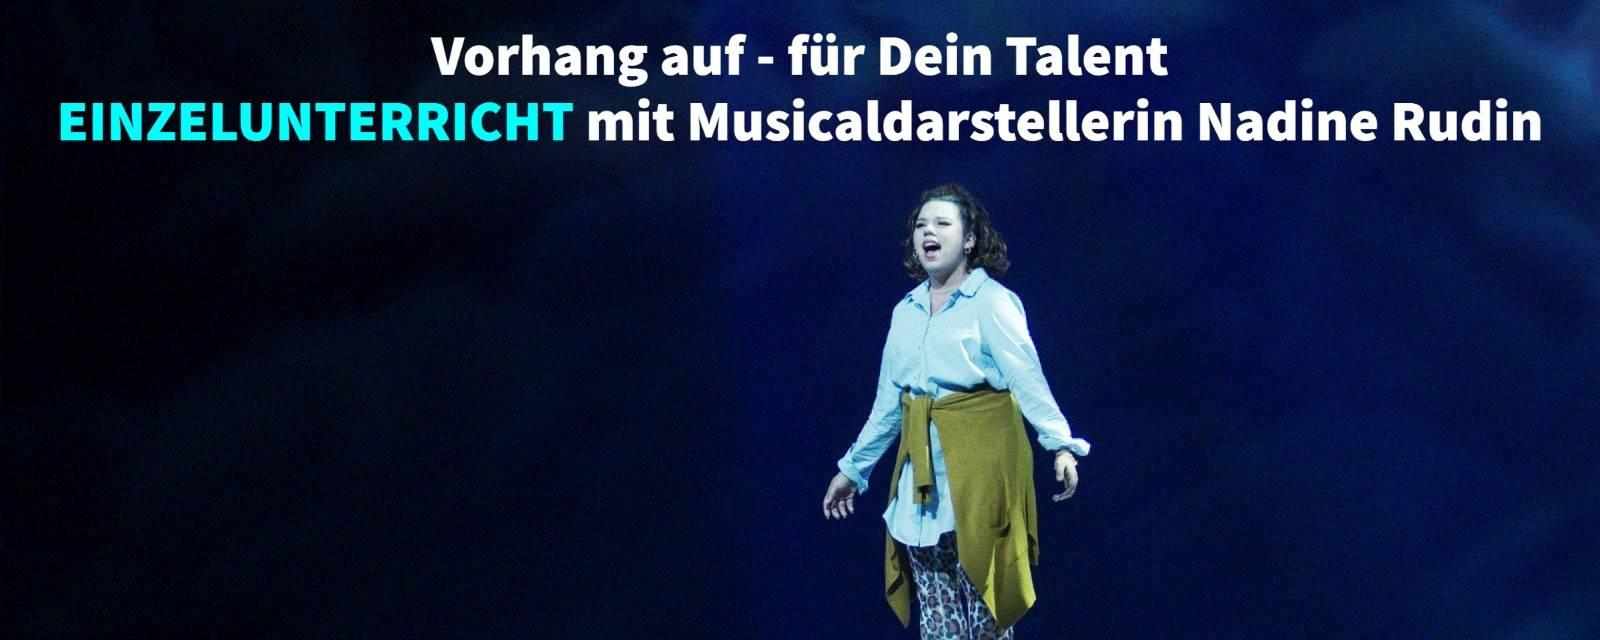 Gesang mit Musical-Profi in Rheinfelden